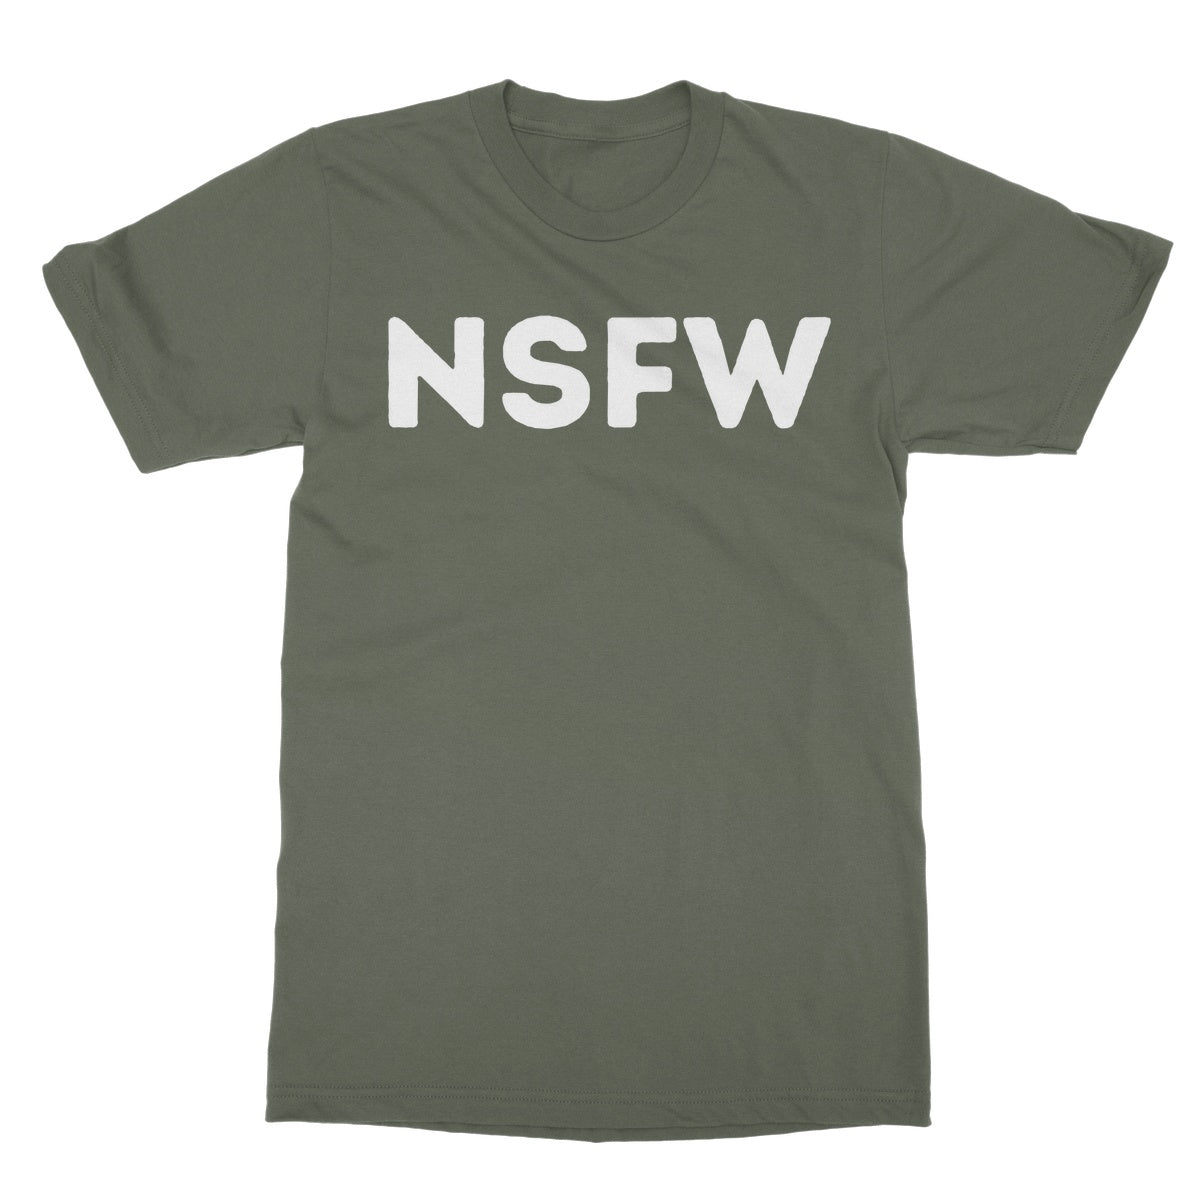 nsfw t shirt green